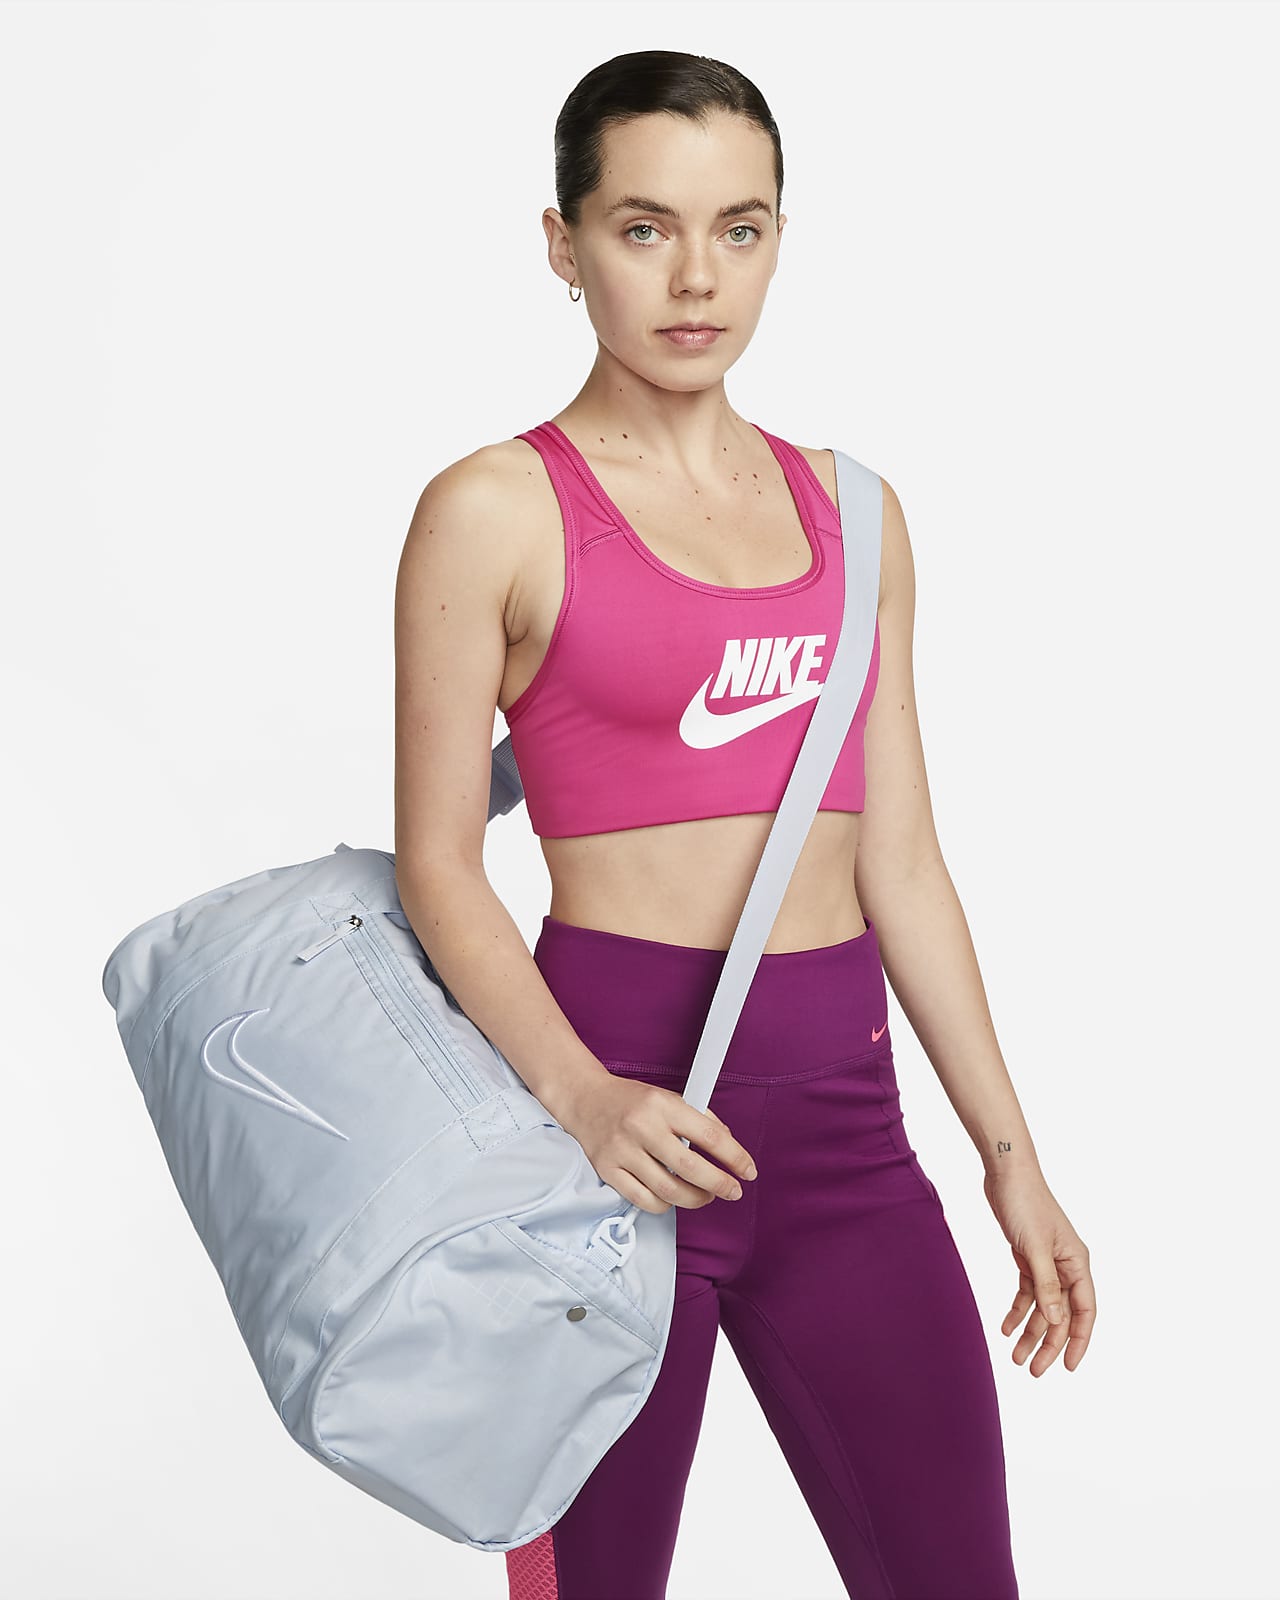 Athleta Travel Bags for Women - Poshmark